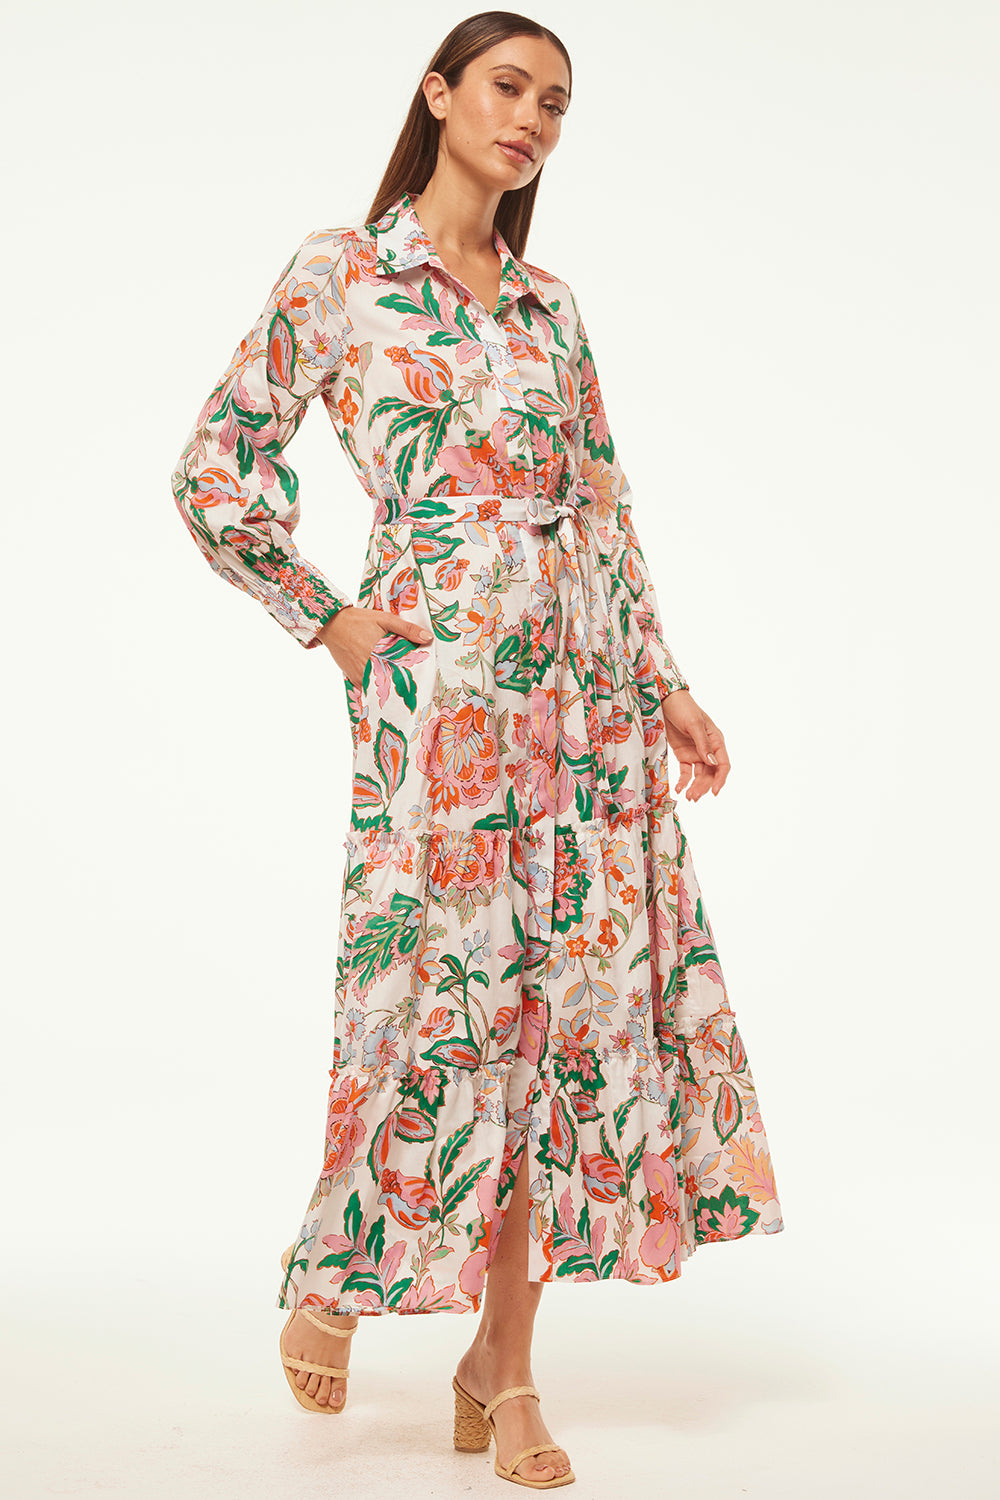 Misa Esmee Dress in Casablanca Floral